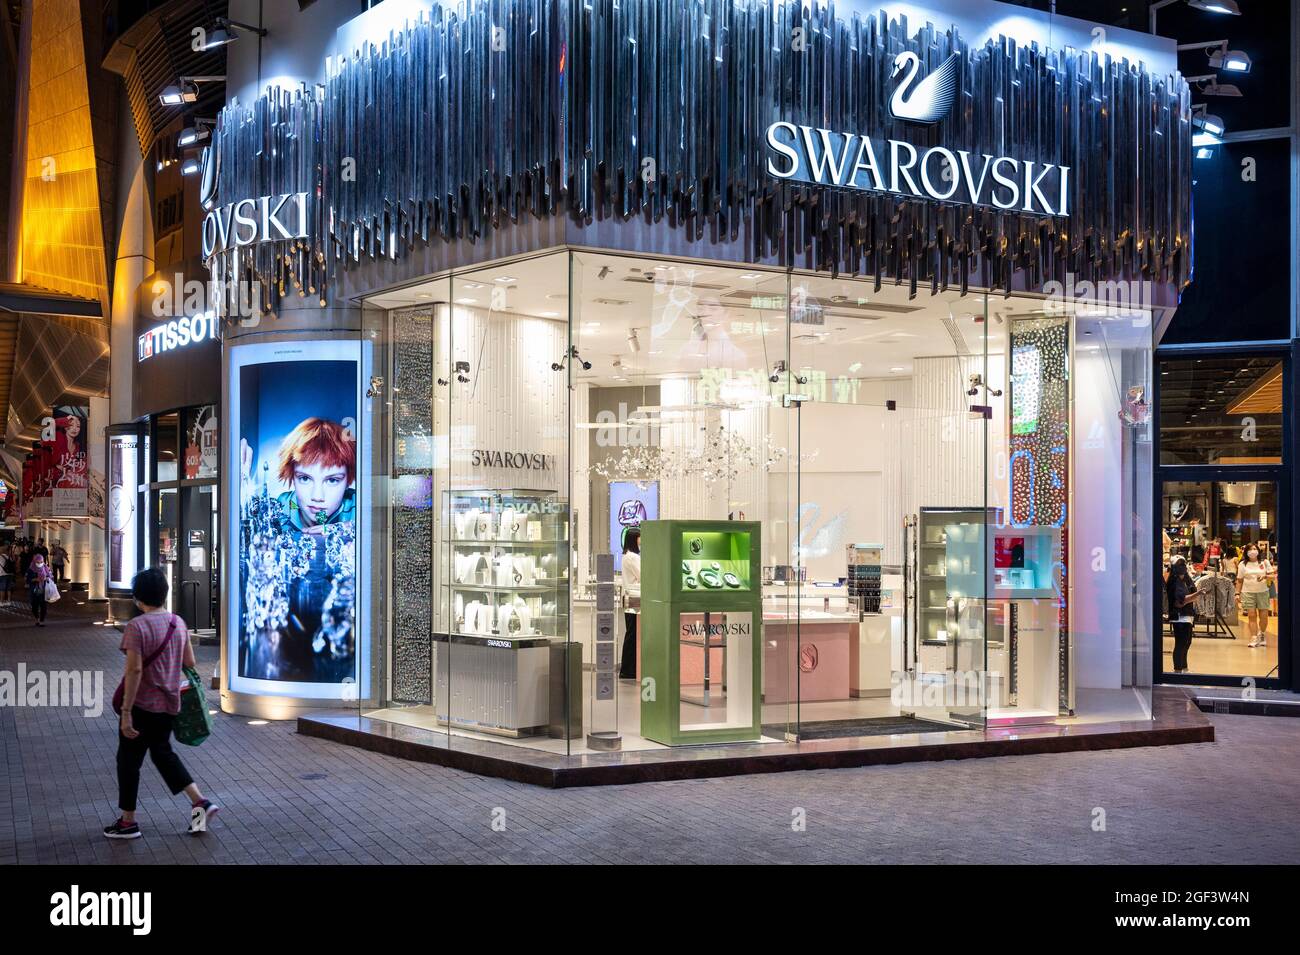 Eine Frau geht am österreichischen Schmuckhersteller und Luxusmarke  Swarovski-Laden in Hongkong vorbei Stockfotografie - Alamy